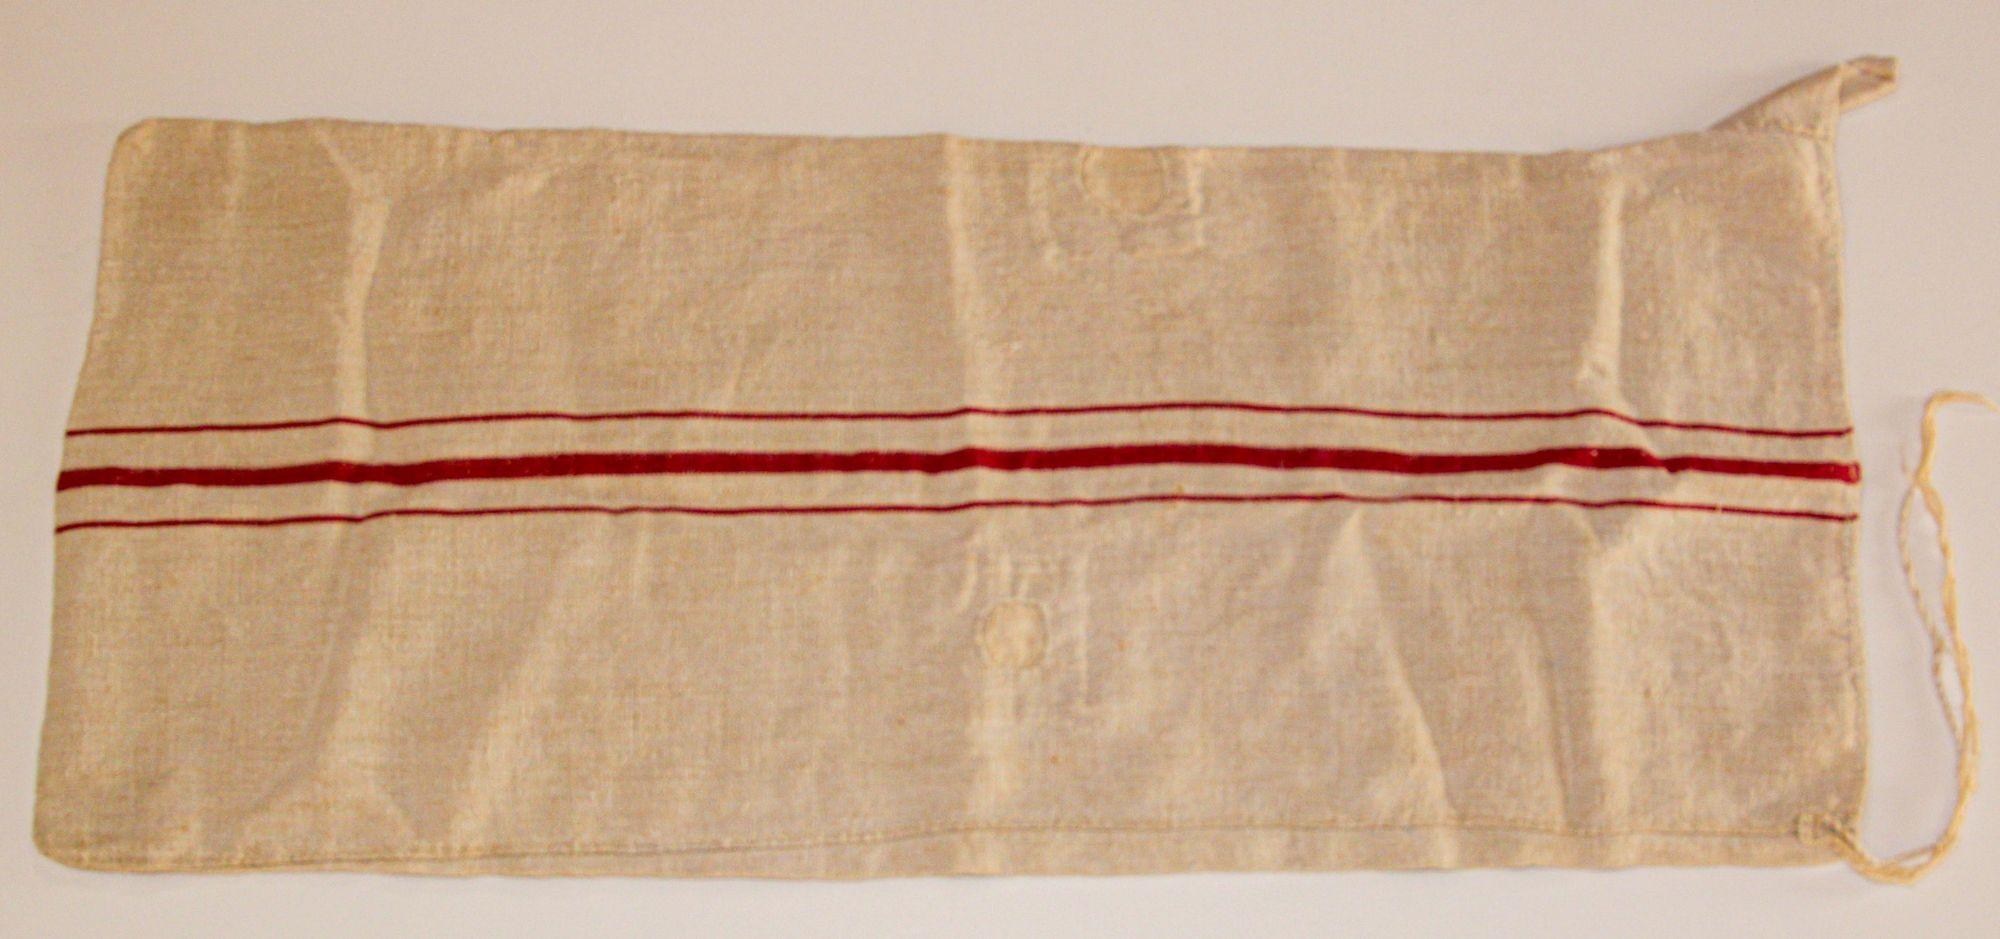 Antique tissu de lin français à grain long, rayé rouge.
Un grand sac à grains fabriqué à partir d'une étroite bande de lin tissée à la maison, repliée et cousue à la main sur les longs côtés.
Sacs à grains anciens, sacs tissés et tissés à la main en